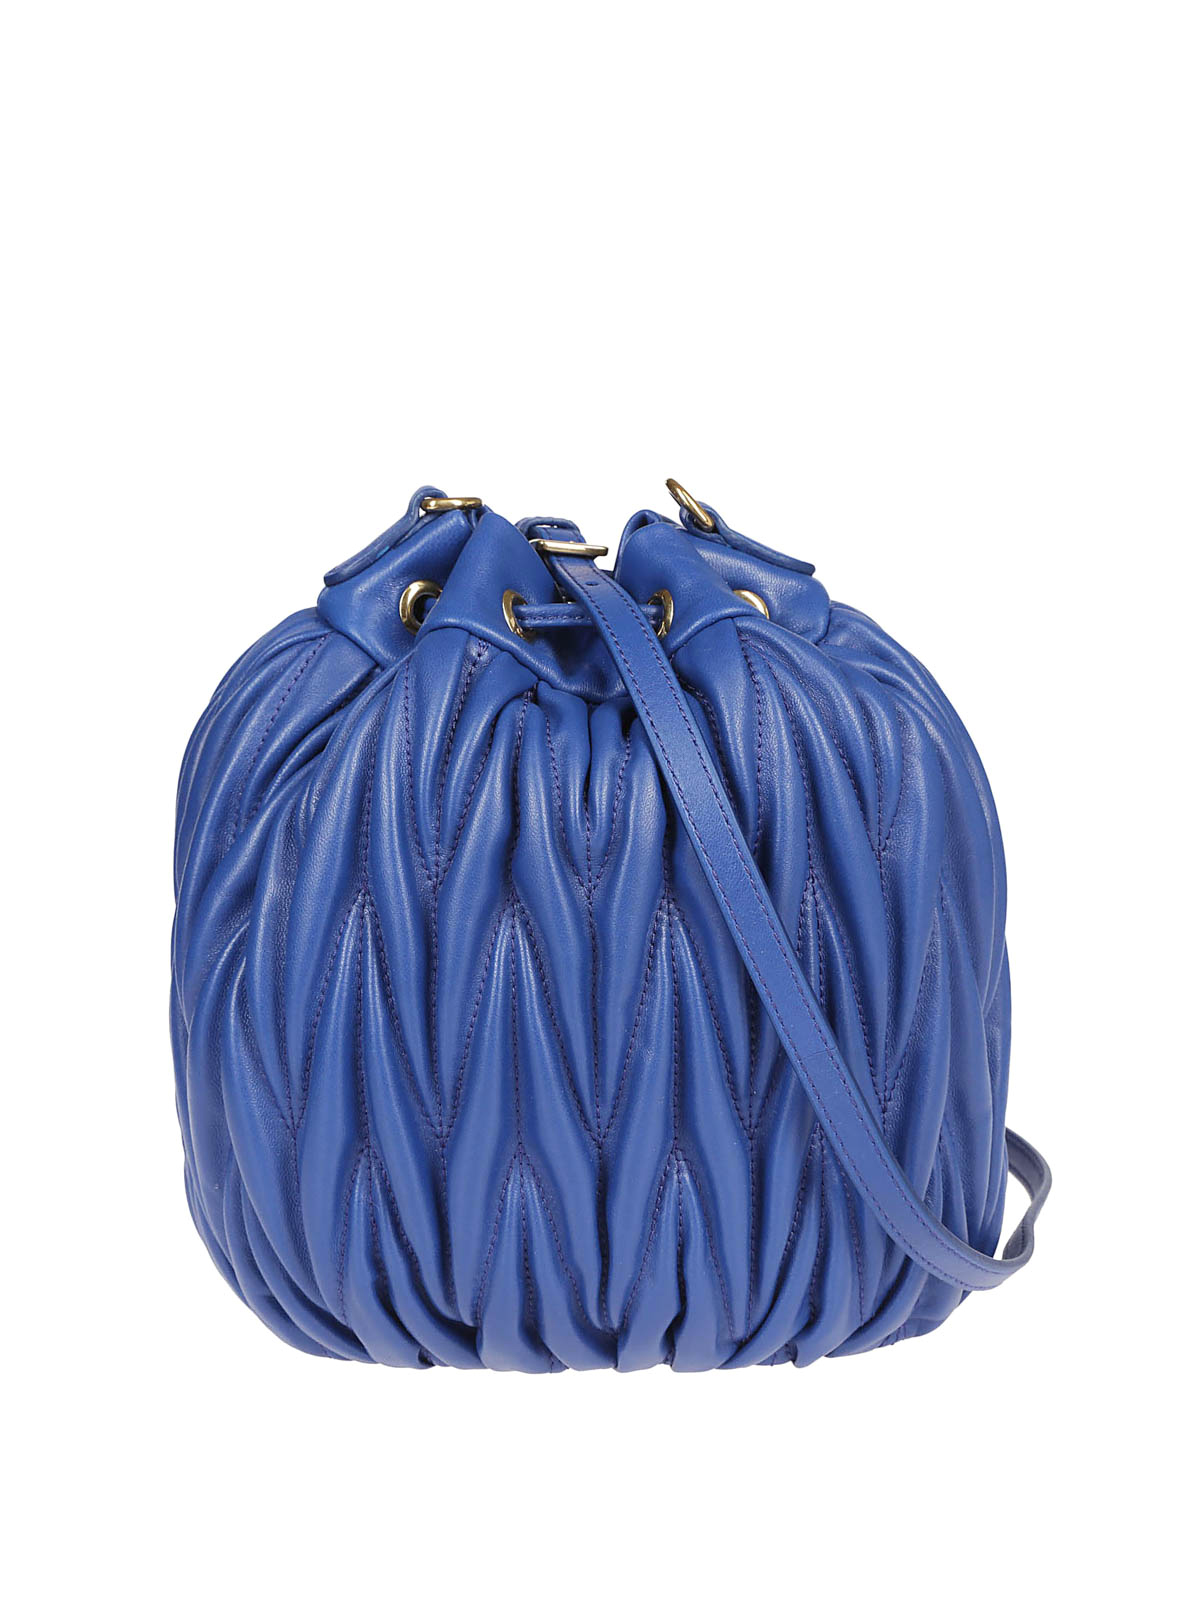 Miu Miu Matelasse Bag in Blue